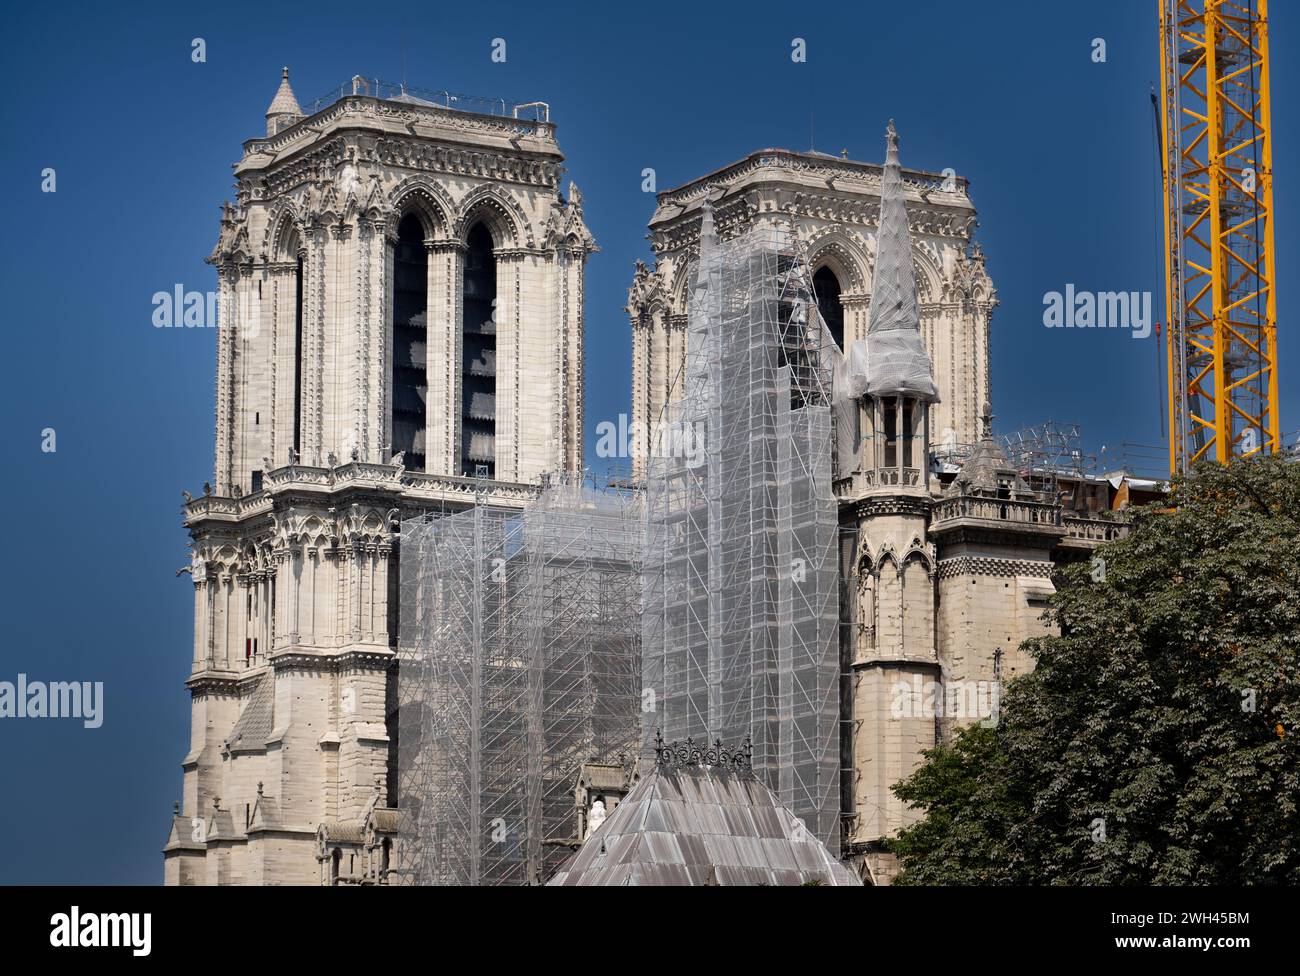 Cathédrale notre-Dame de Paris en réparation après l'incendie dévastateur du 15 avril 2019 Banque D'Images